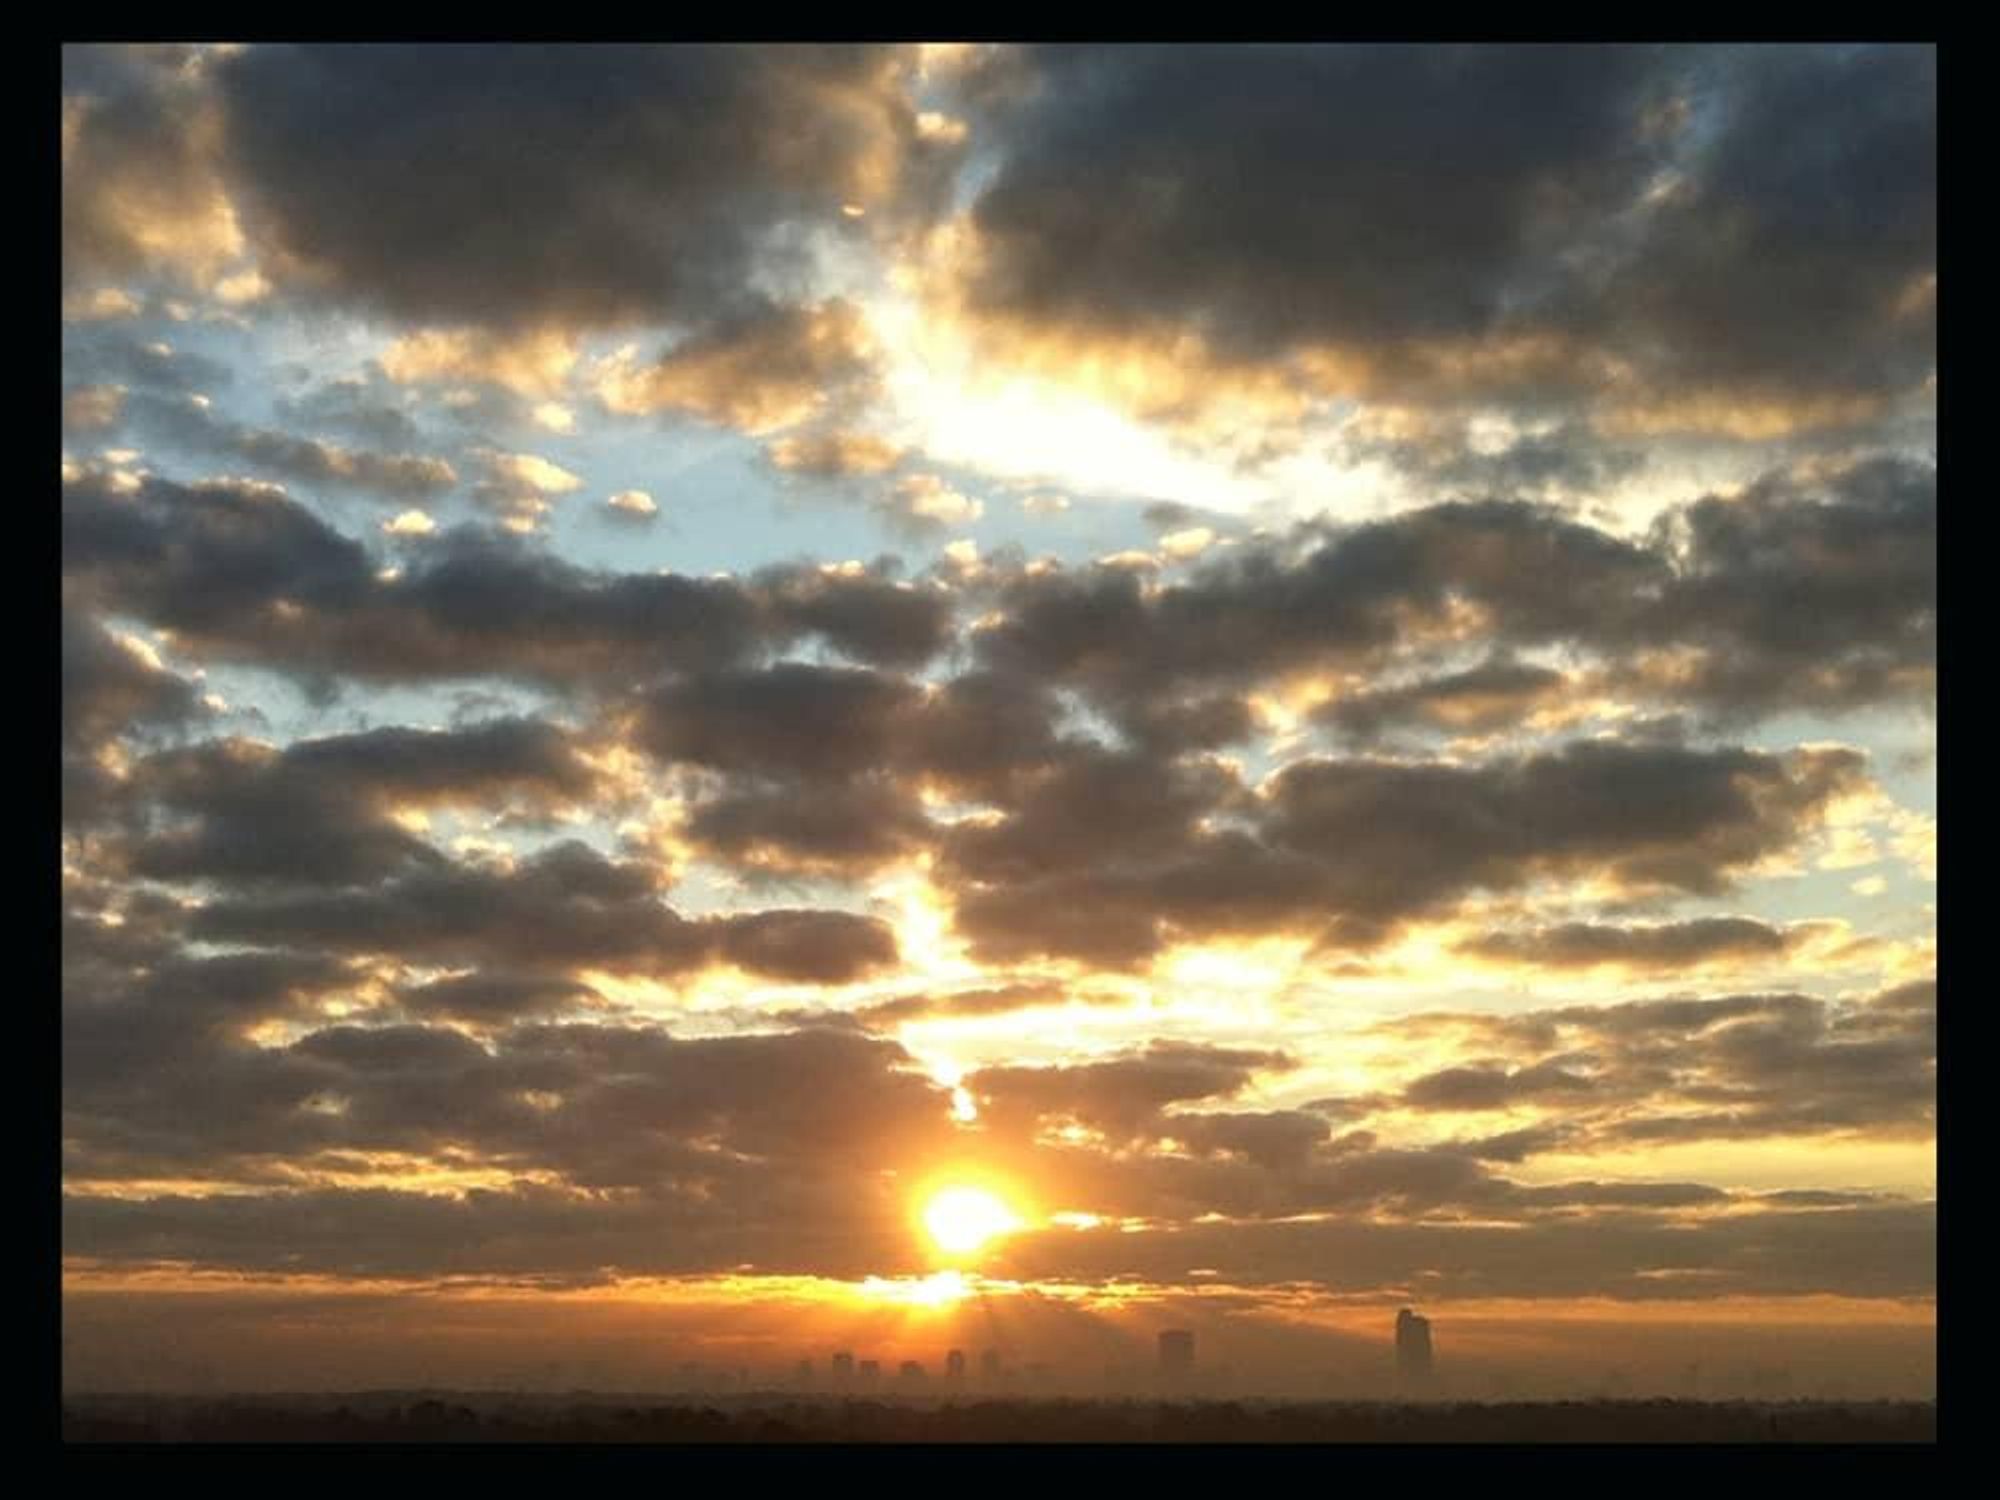 News_Houston 175_photo contest_Catherine Walsh_sunset_Houston skyline_January 2012_8643